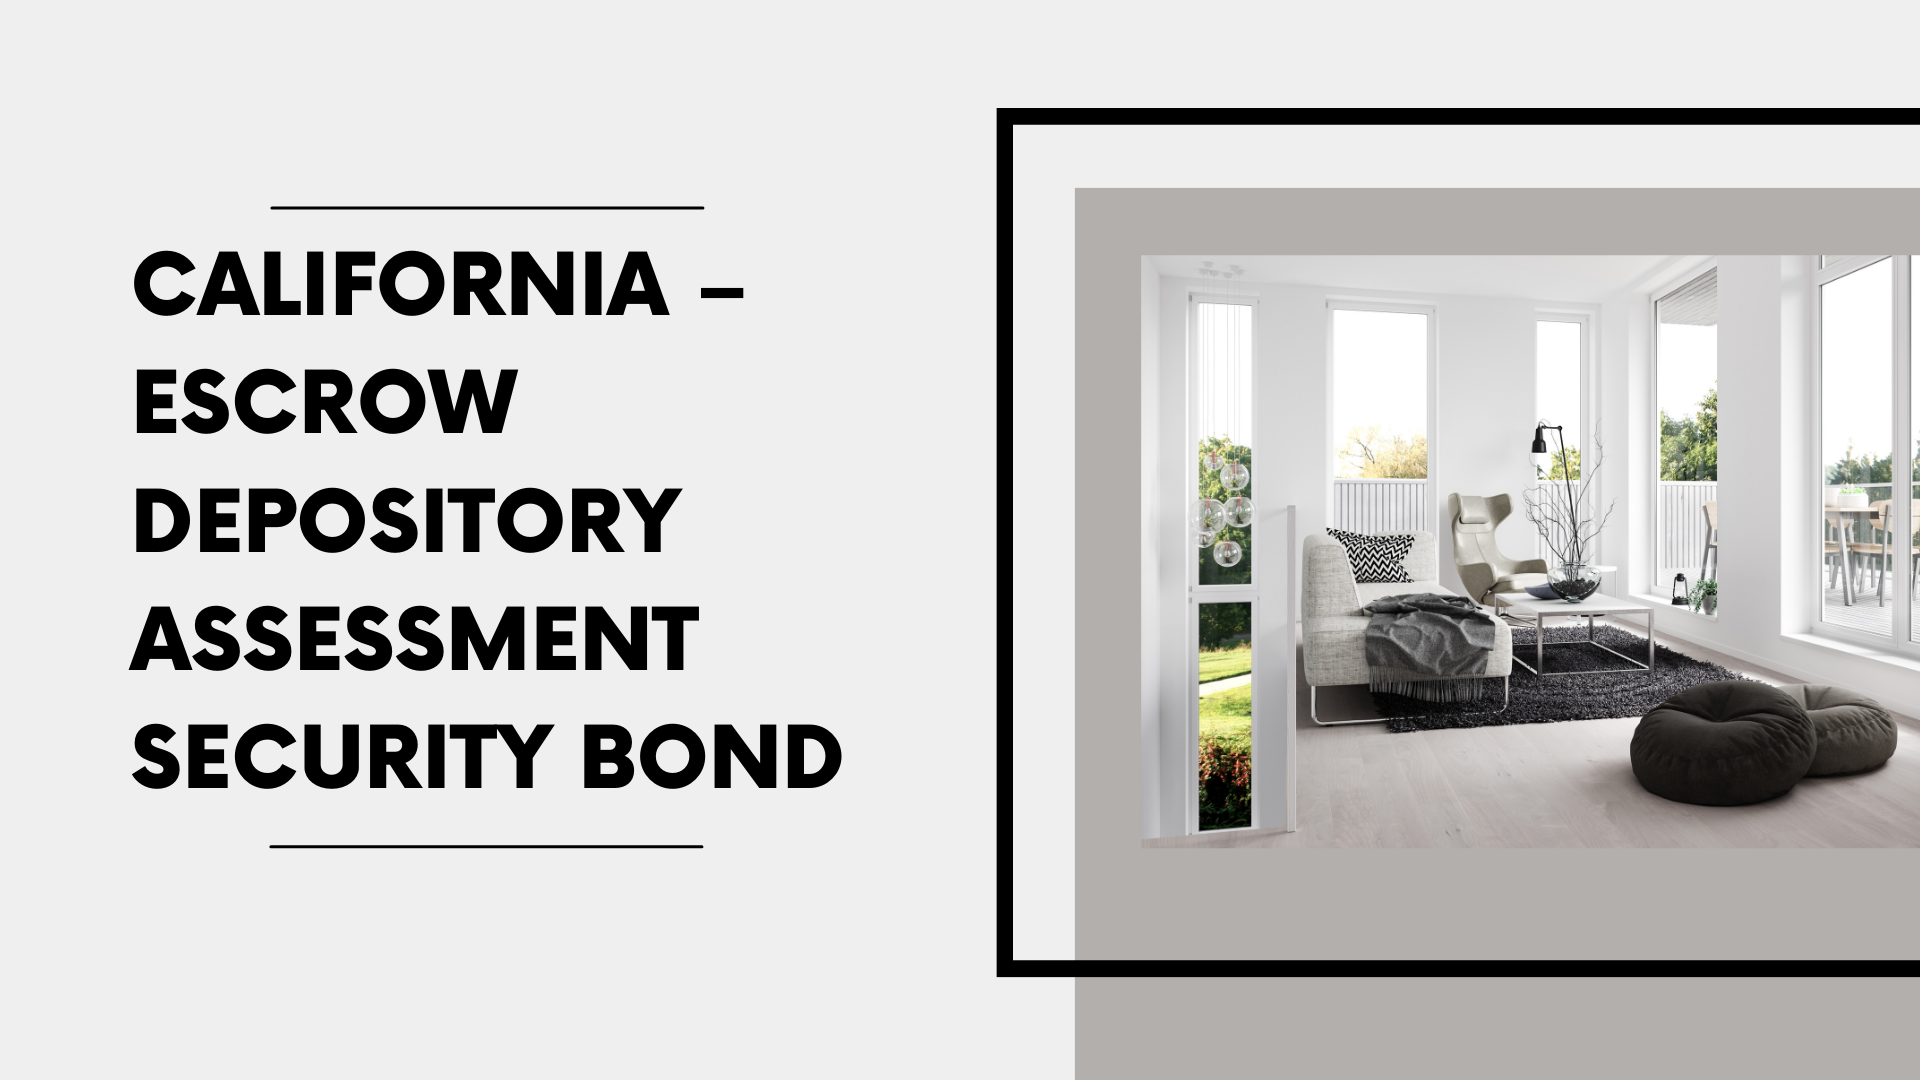 Surety Bond-California – Escrow Depository Assessment Security Bond